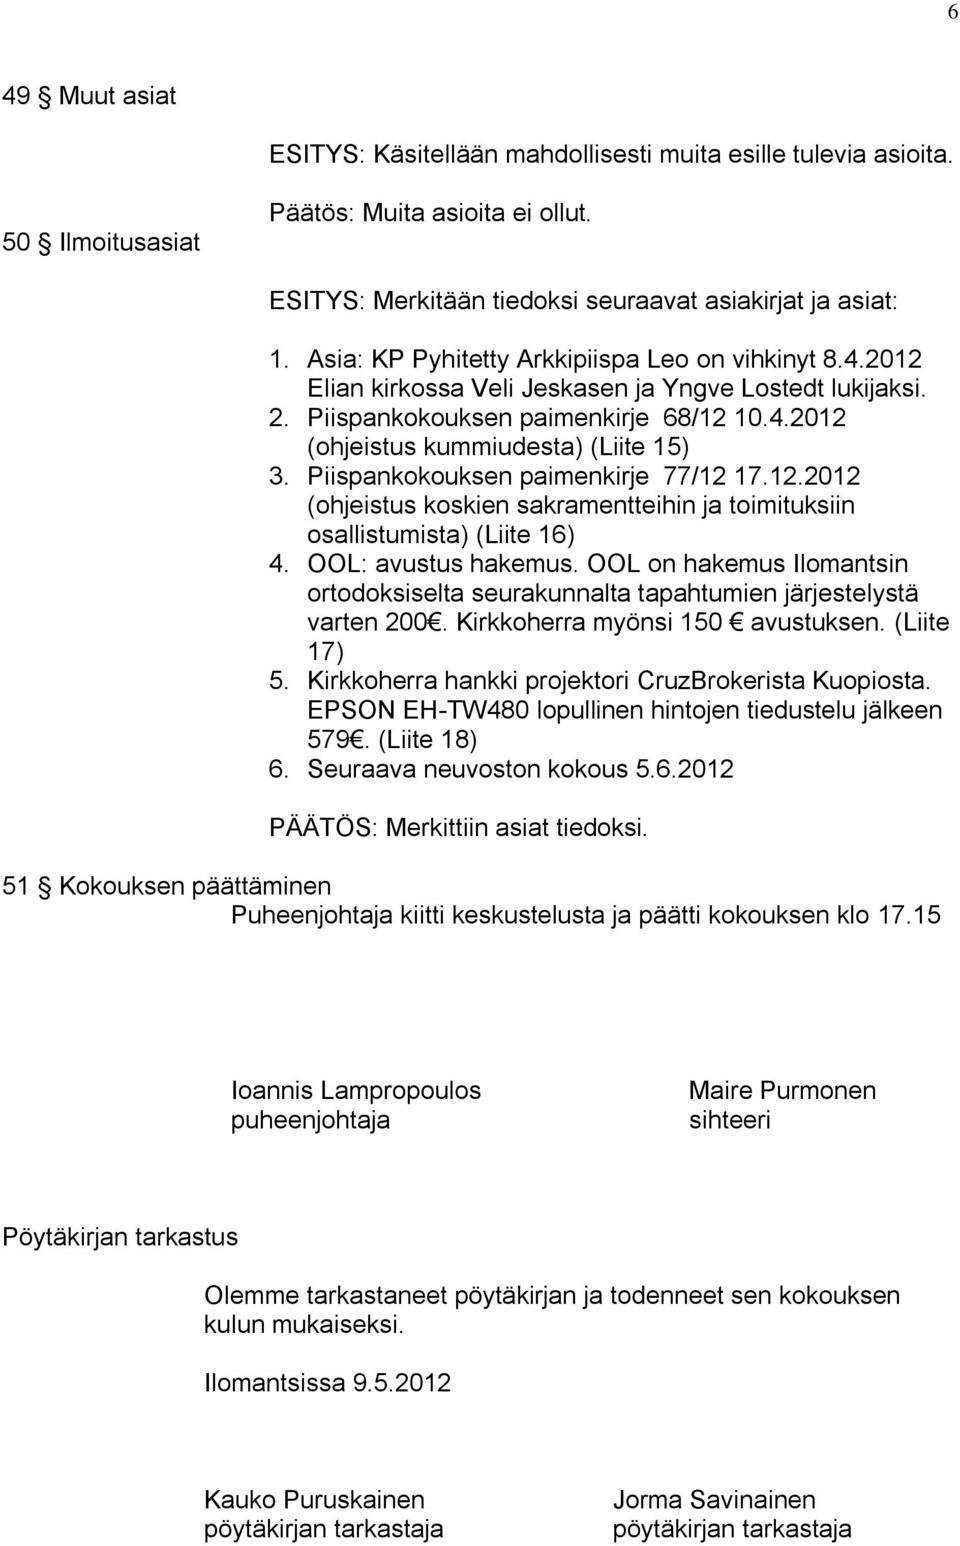 Piispankokouksen paimenkirje 77/12 17.12.2012 (ohjeistus koskien sakramentteihin ja toimituksiin osallistumista) (Liite 16) 4. OOL: avustus hakemus.